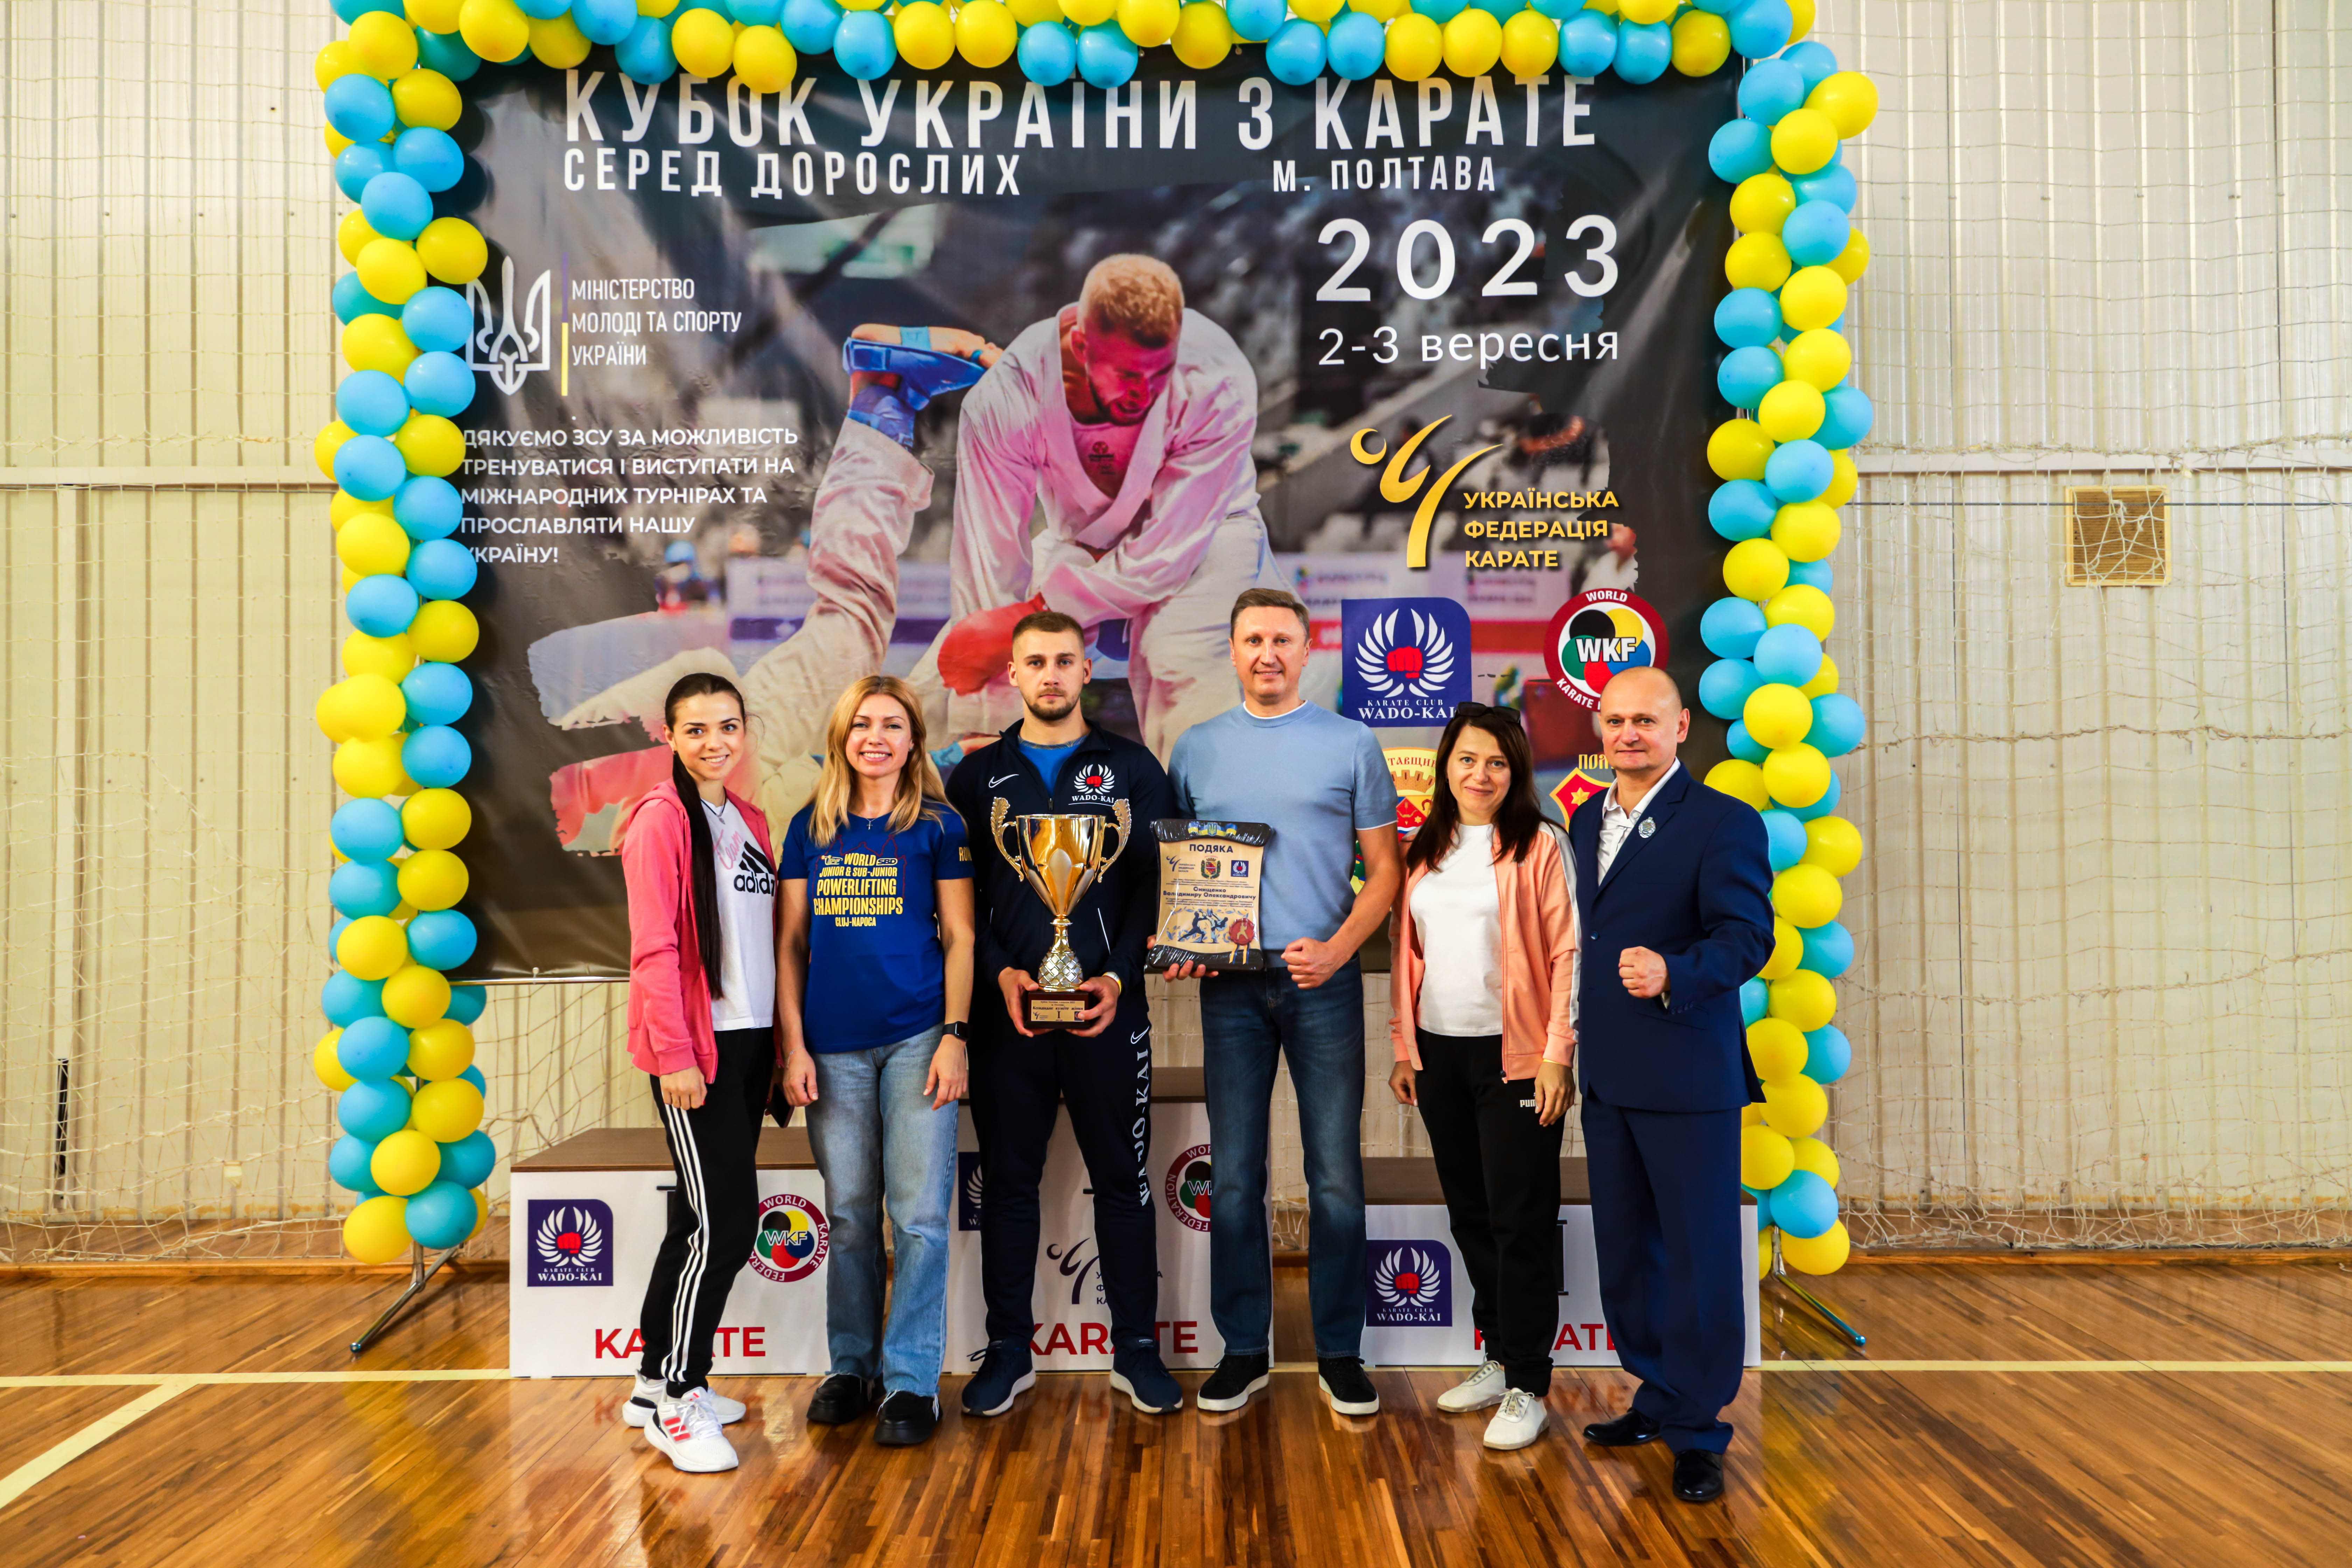 Викладач кафедри фізичного виховання став володарем Кубку України з карате